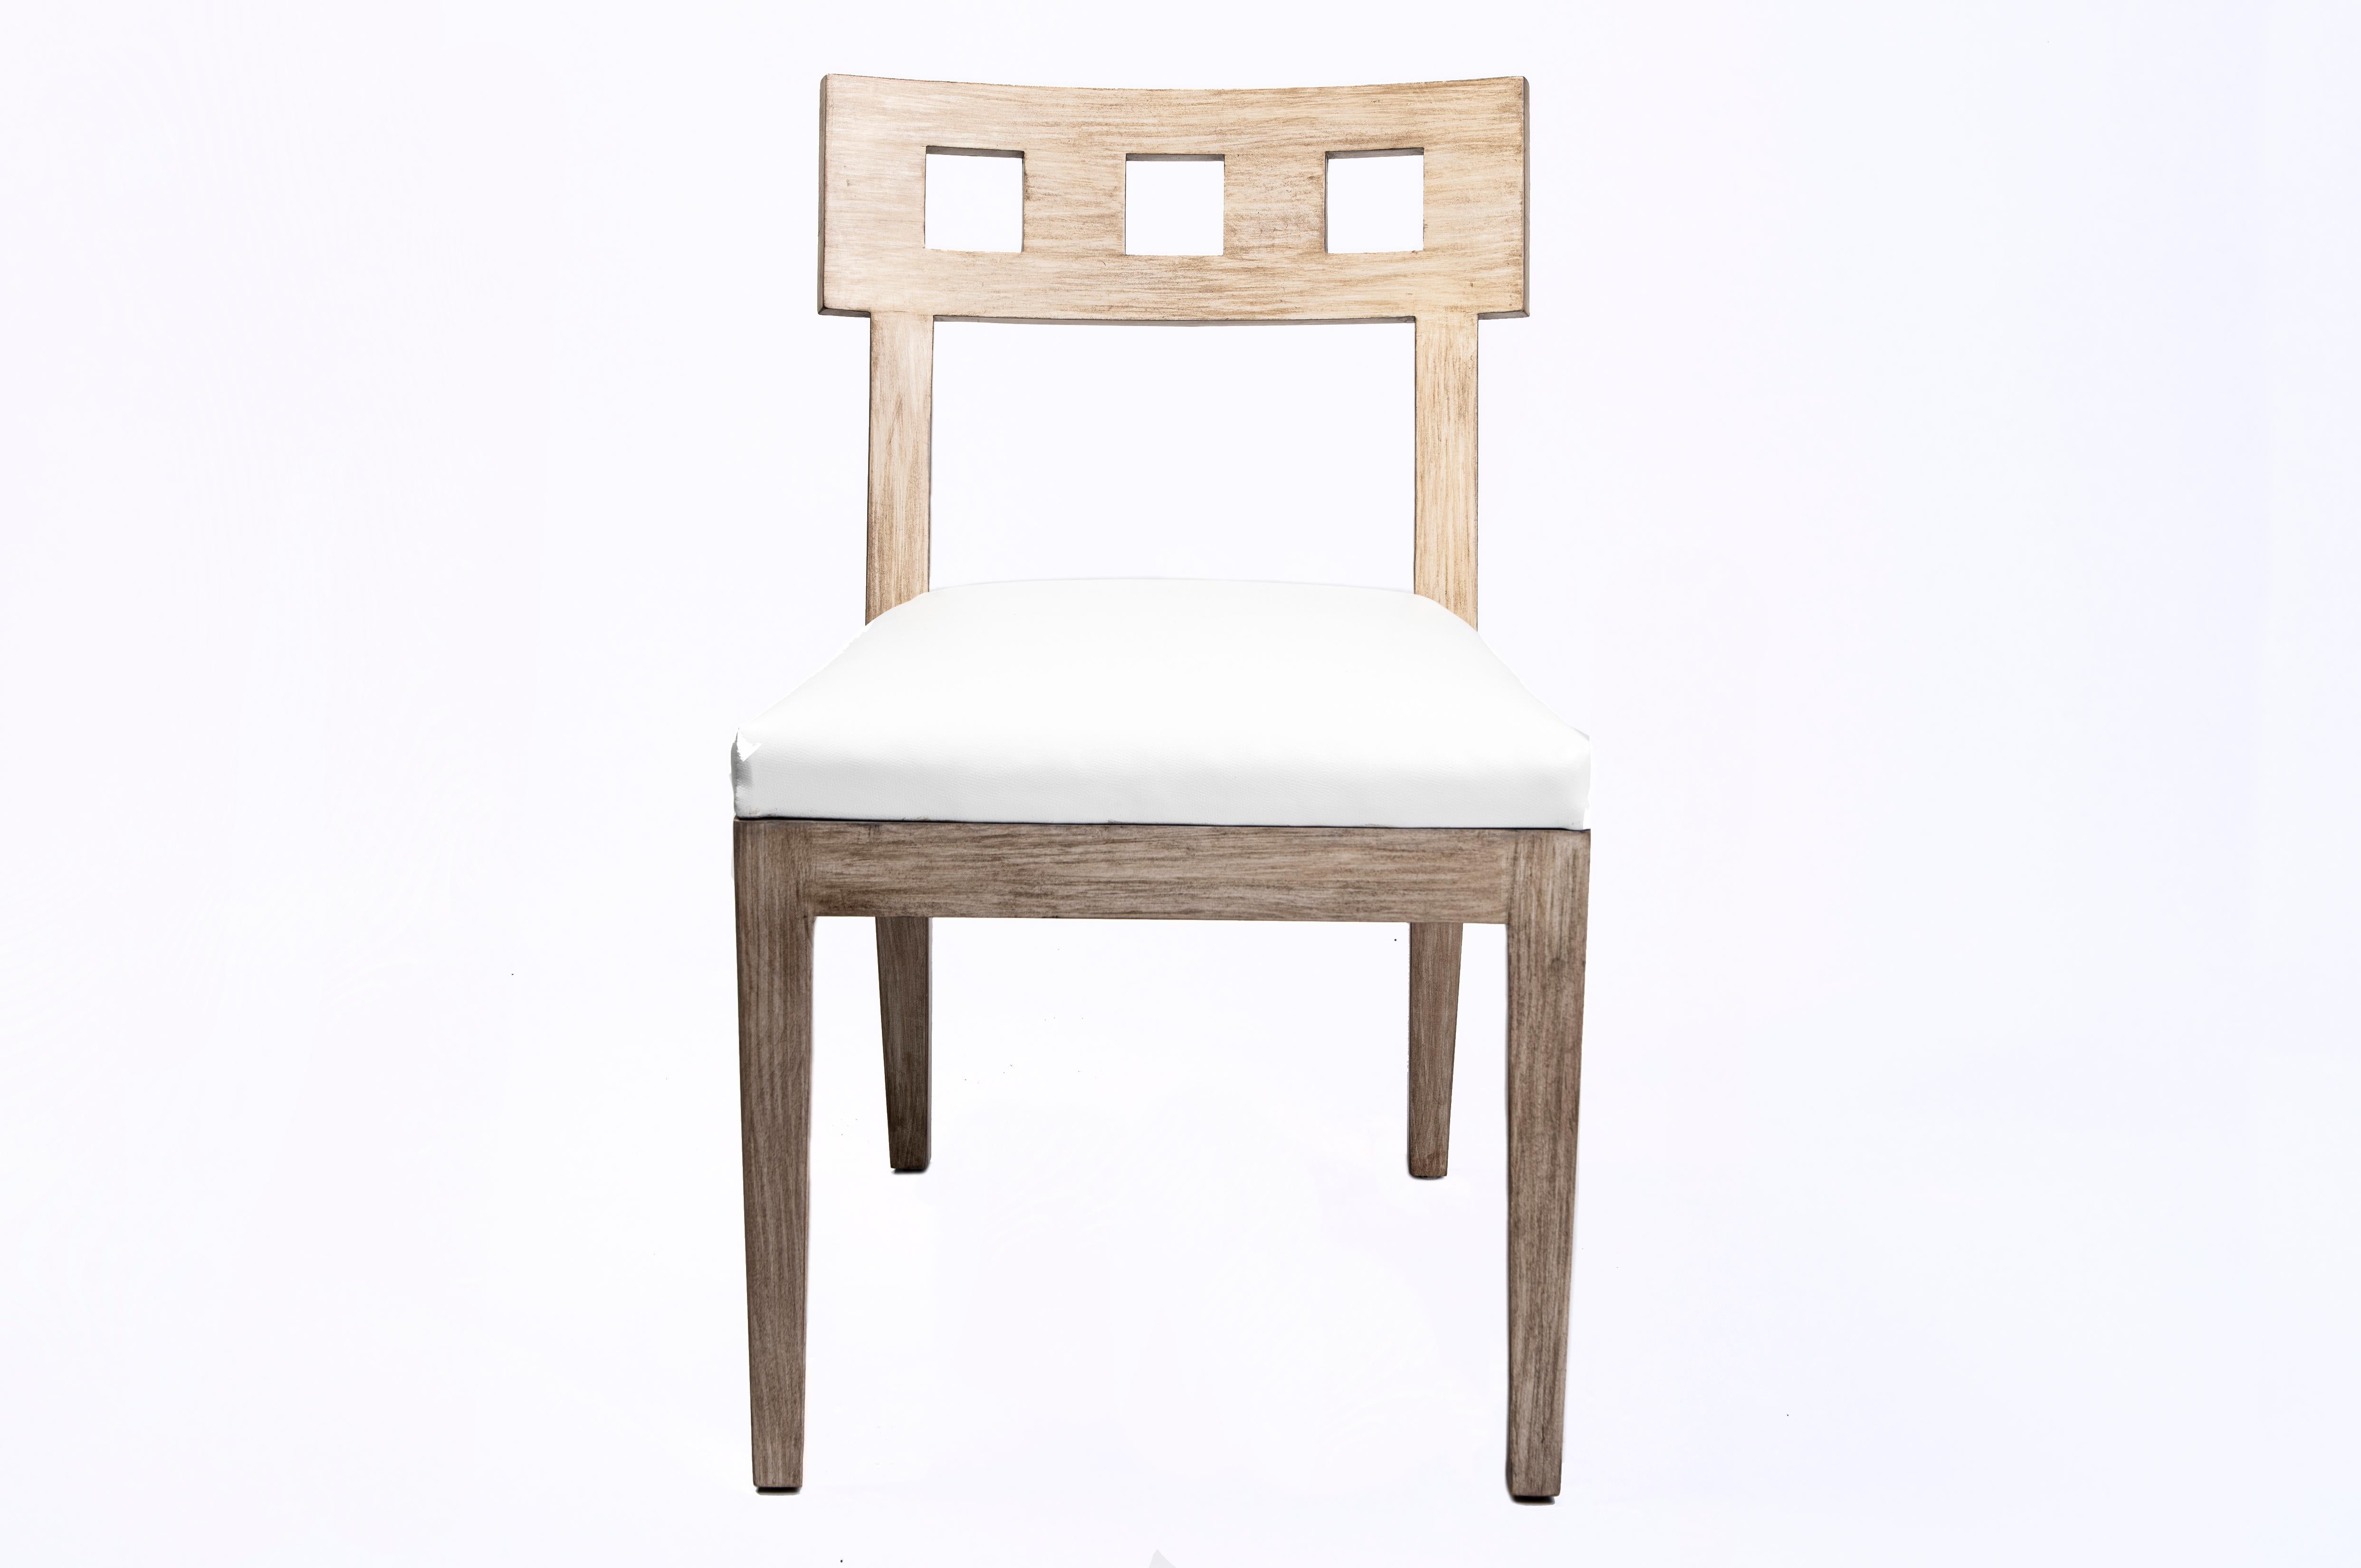 Les carrés et l'ouverture du dossier de la chaise Stanley, magnifiquement incurvé, permettent à la lumière naturelle de traverser son élégant design. Ajoutez confort et style à un bureau, à un coin repas, à une table de salle à manger formelle ou